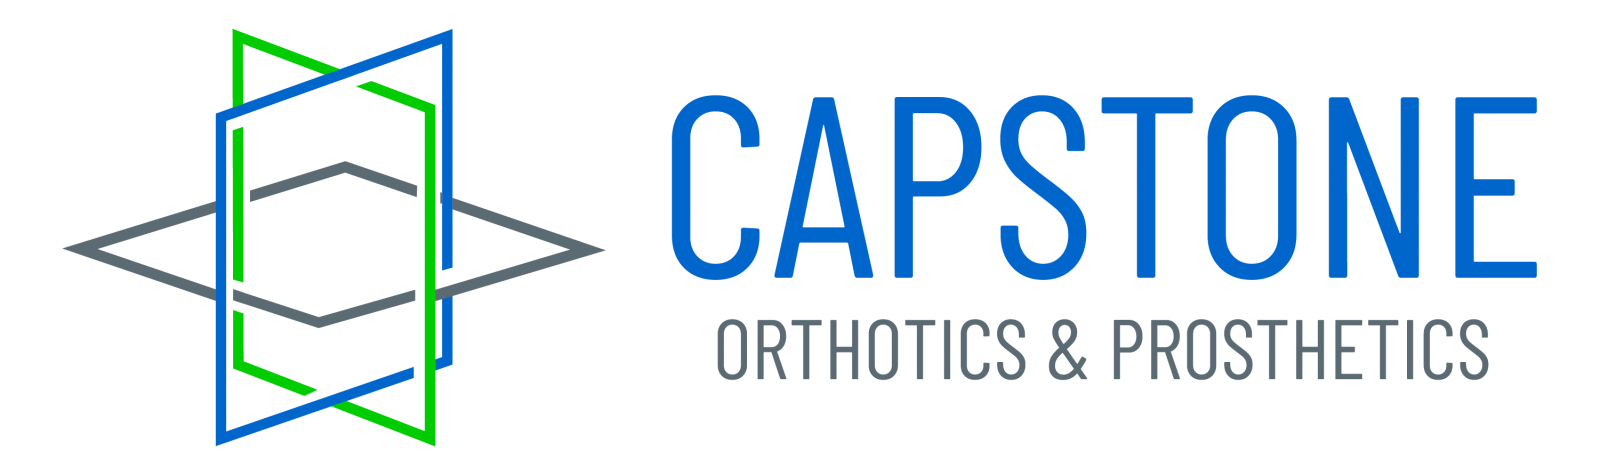 Capstone Orthotics and Prosthetics Logo